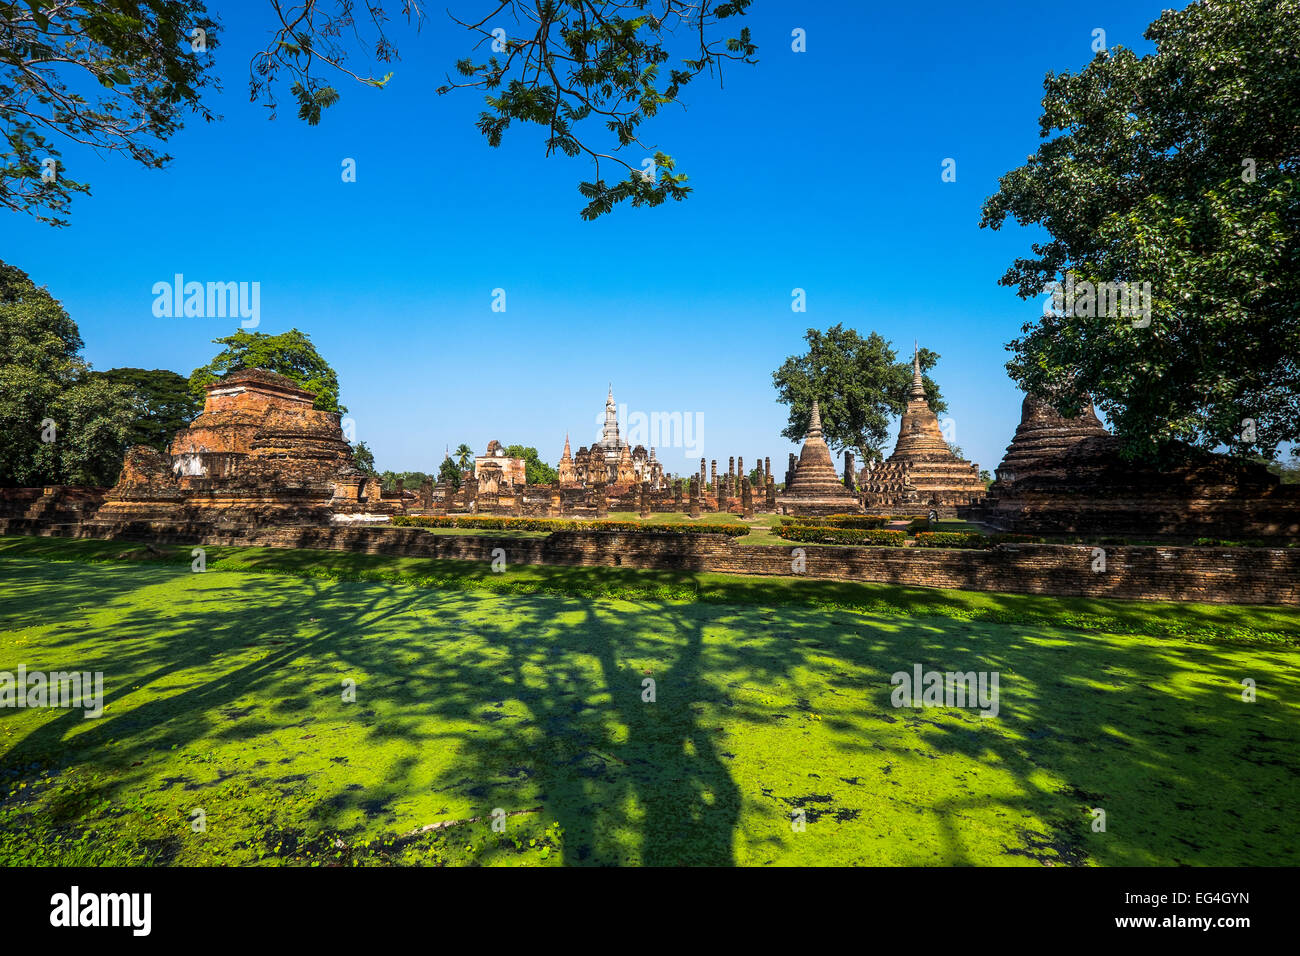 L'Asie. La Thaïlande, l'ancienne capitale du Siam. Parc archéologique de Sukhothai, classé au Patrimoine Mondial de l'UNESCO. Wat Mahathat. Banque D'Images